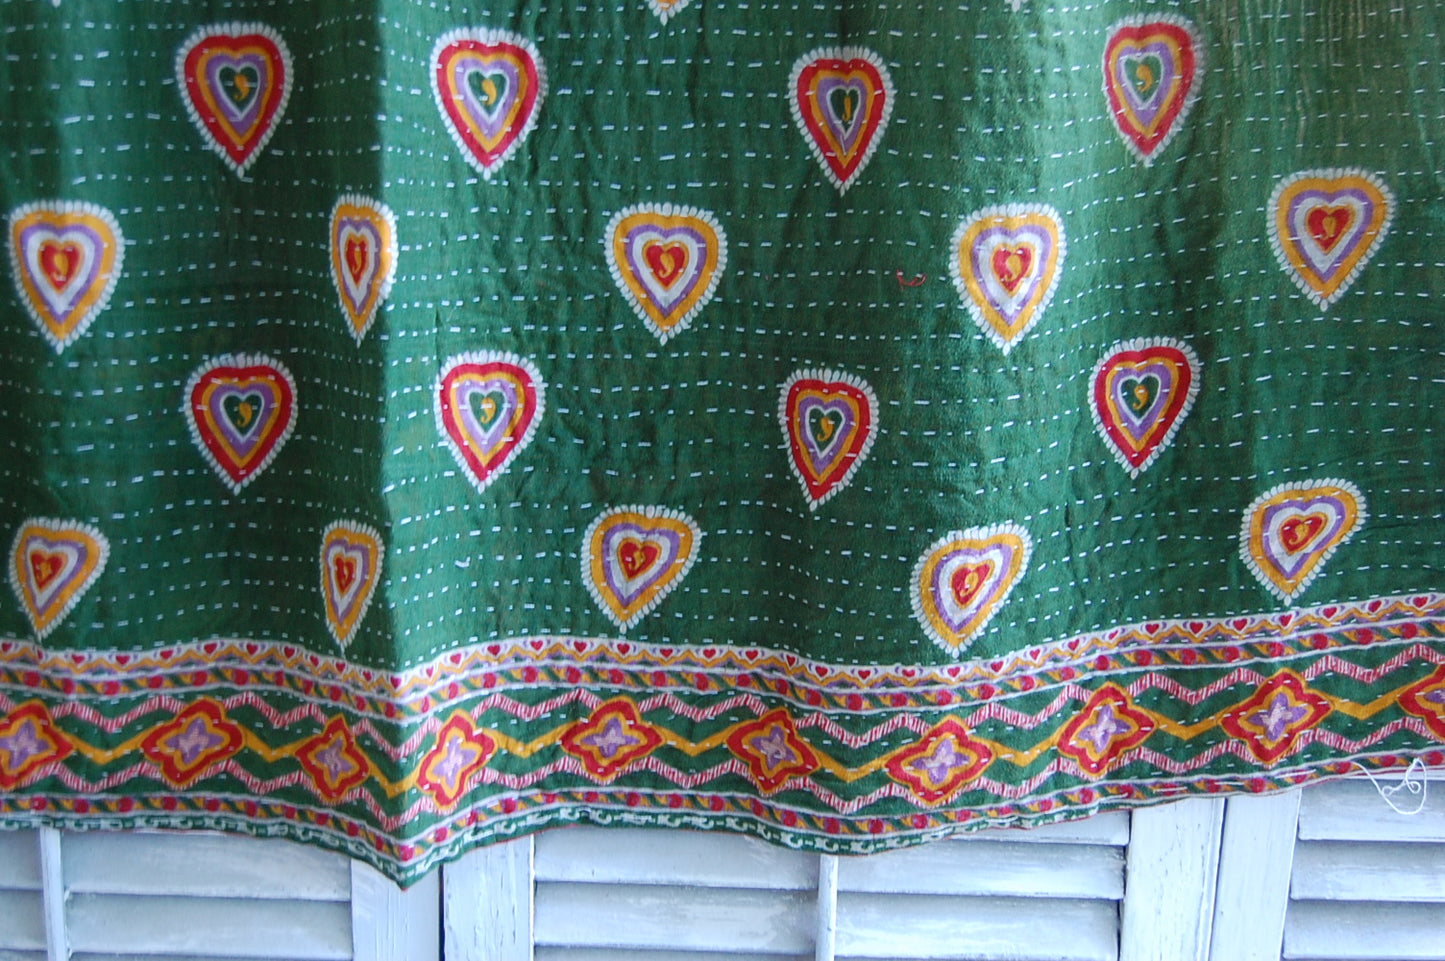 Green Kantha quilt